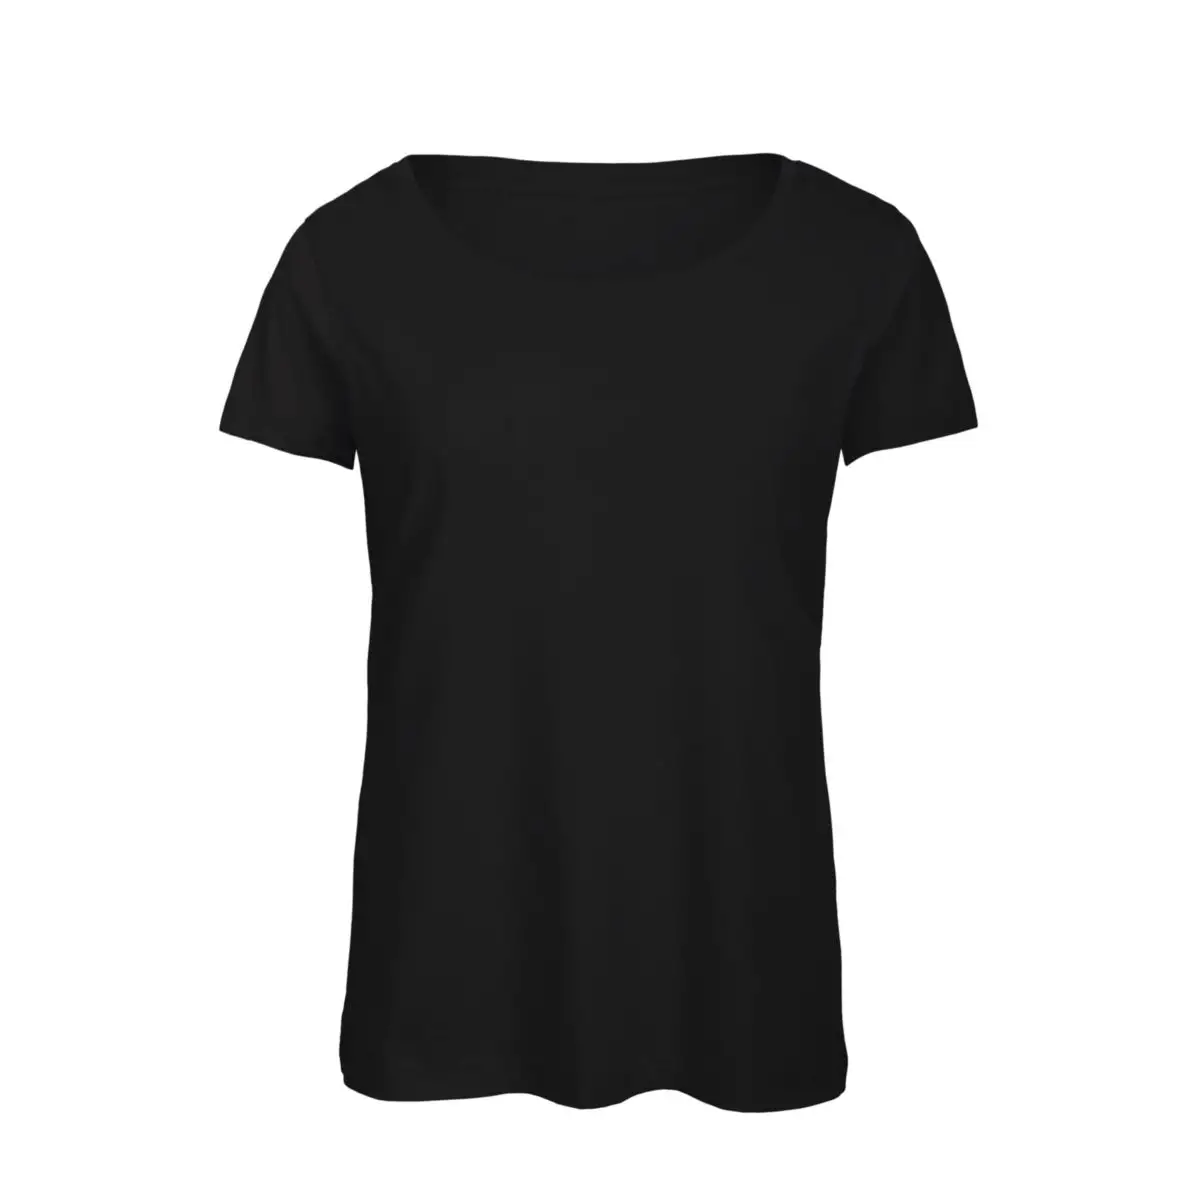 T-Shirt Manica Corta Donna Policotone Personalizzata - B&C Collection